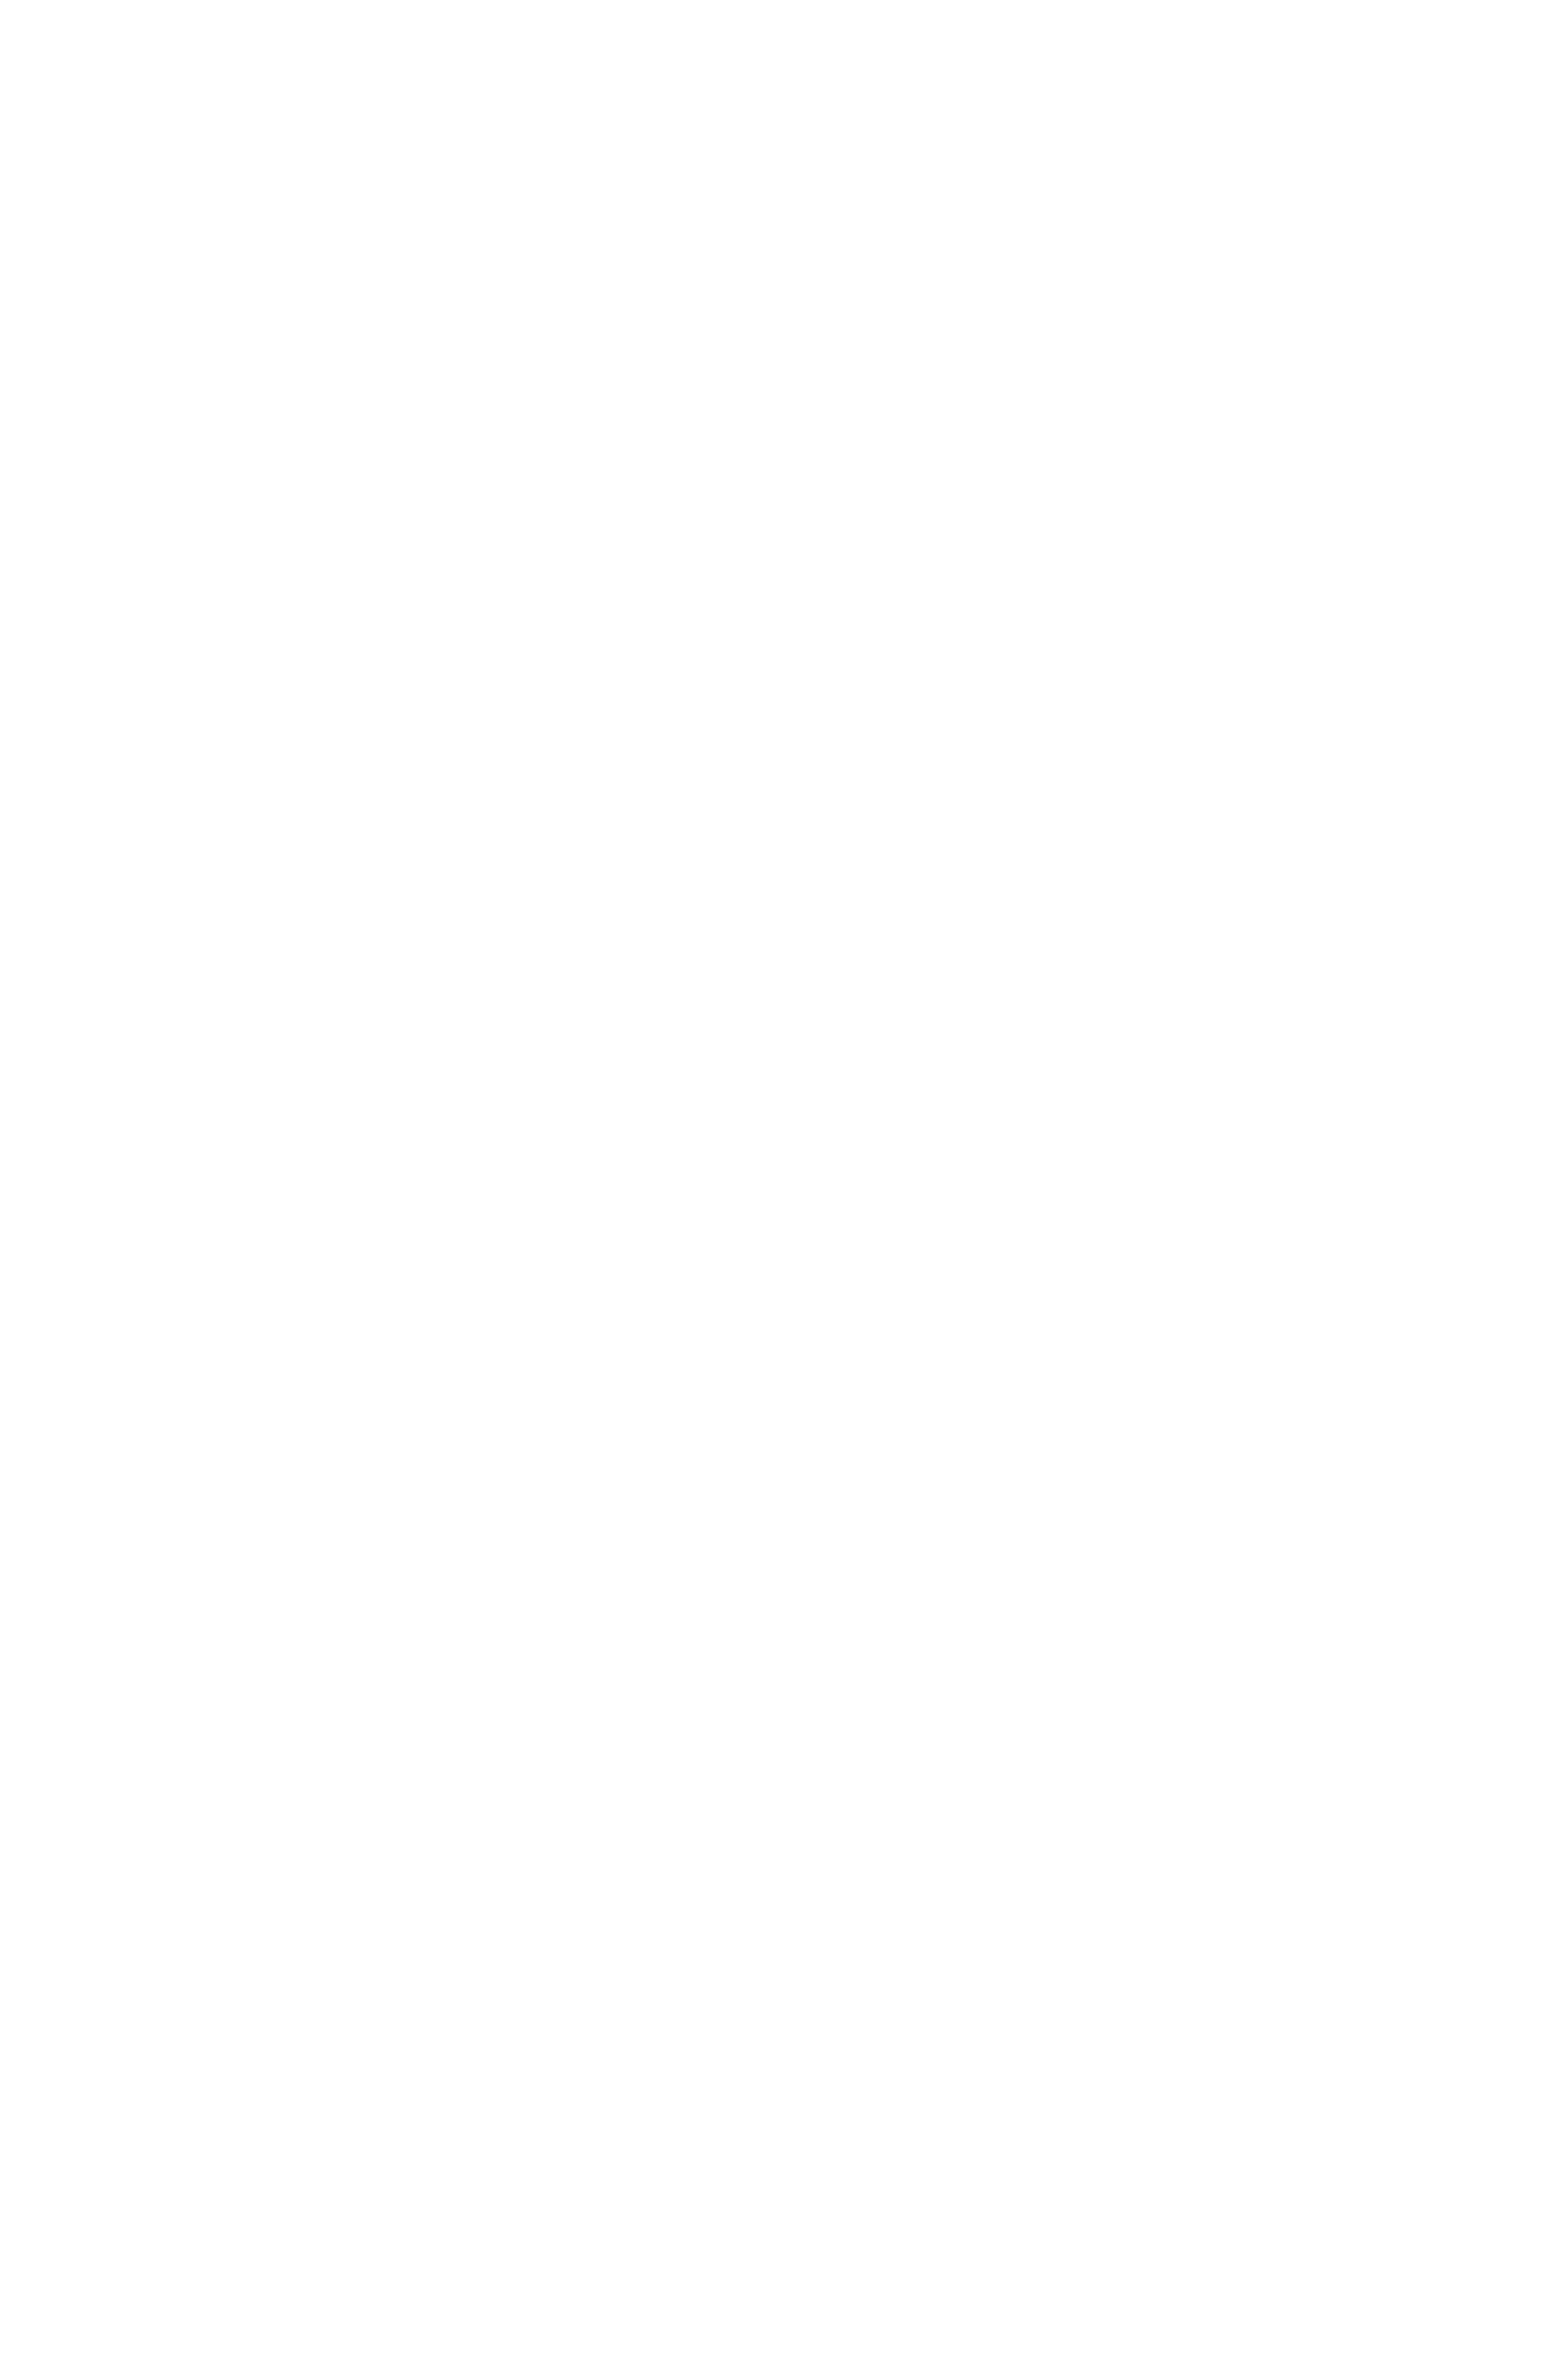 Выставочное пространство чердака Зимнего дворца. Выставочный проект Юрия Молодковца «Новый Эрмитаж», Санкт-Петербург, 2006 